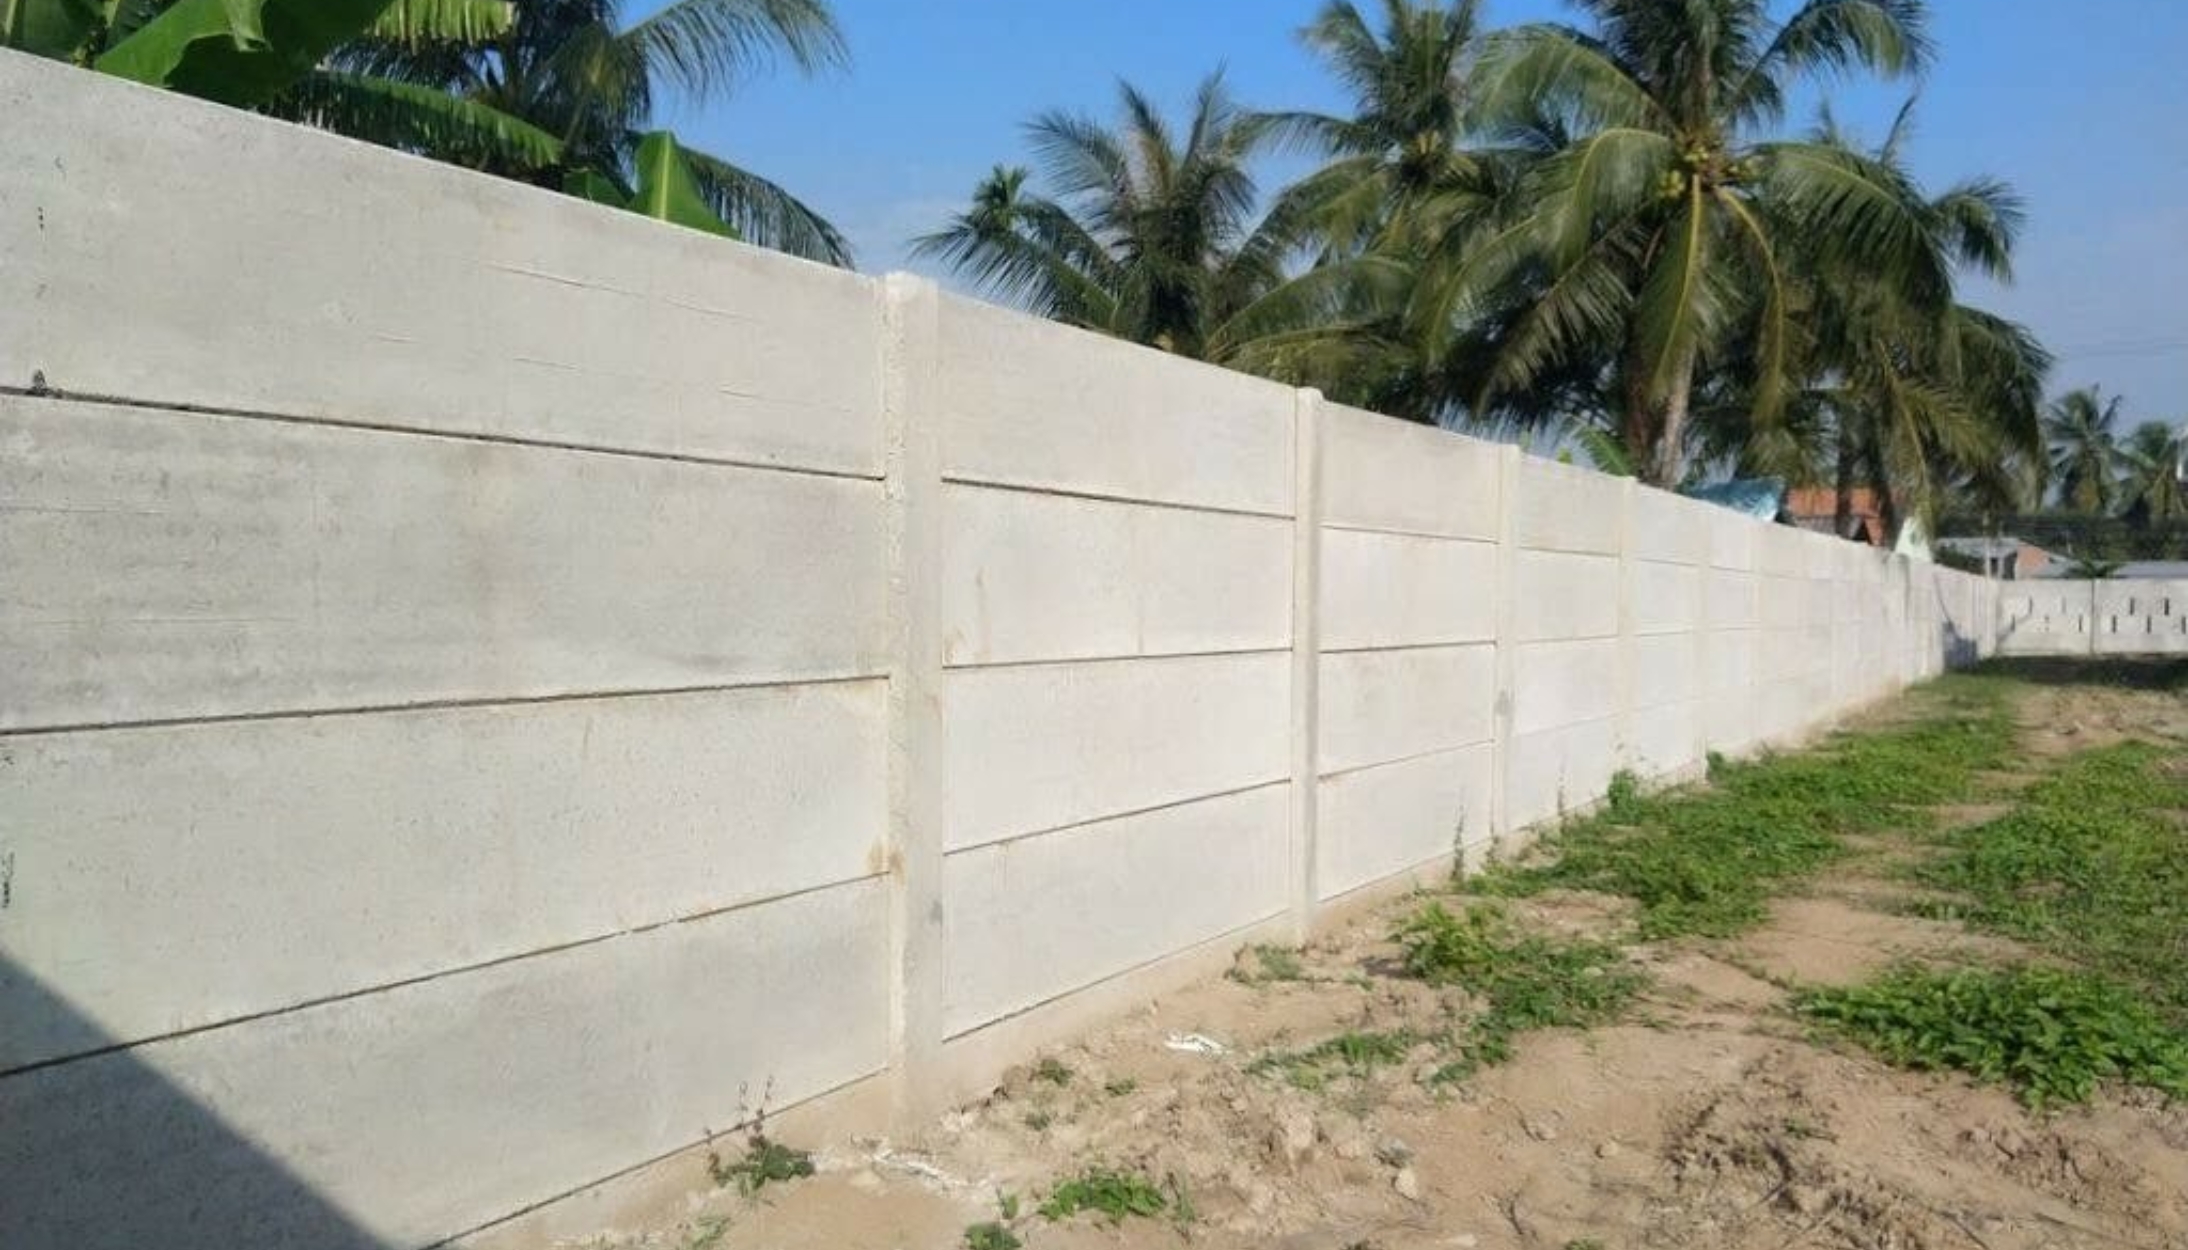 Tiêu chuẩn thiết kế tường bê tông cốt thép